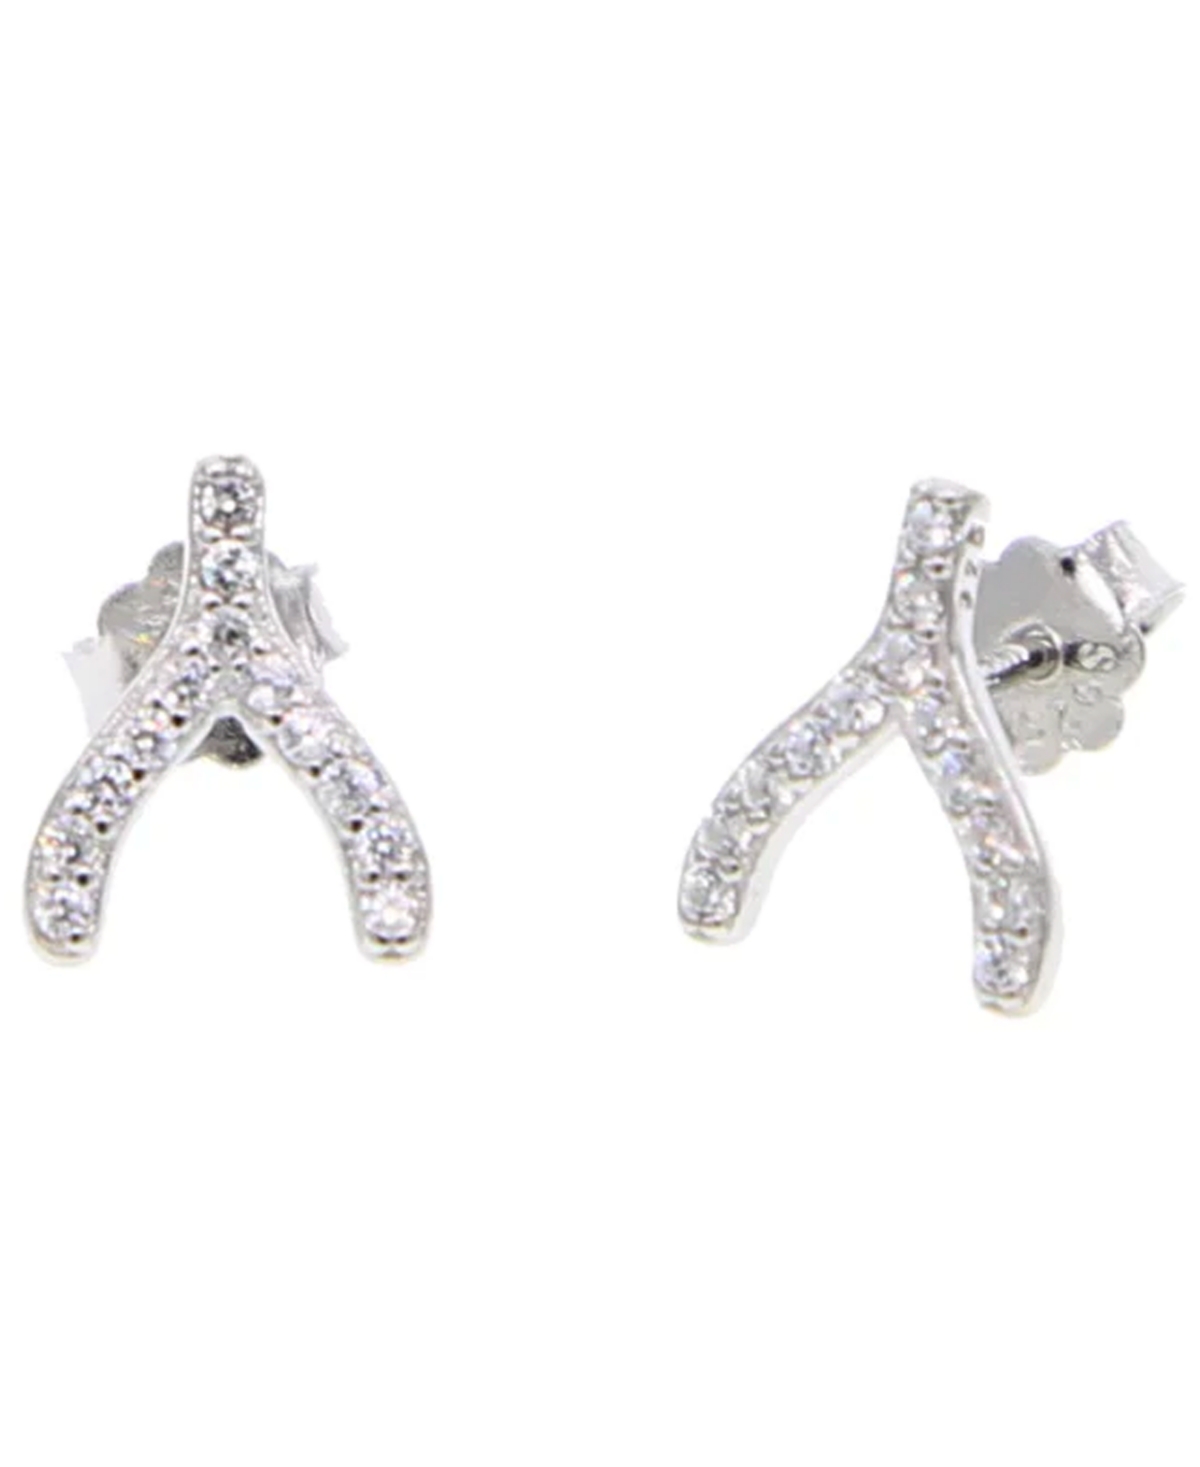 Women's Wishbone Stud Earrings - Silver Plated